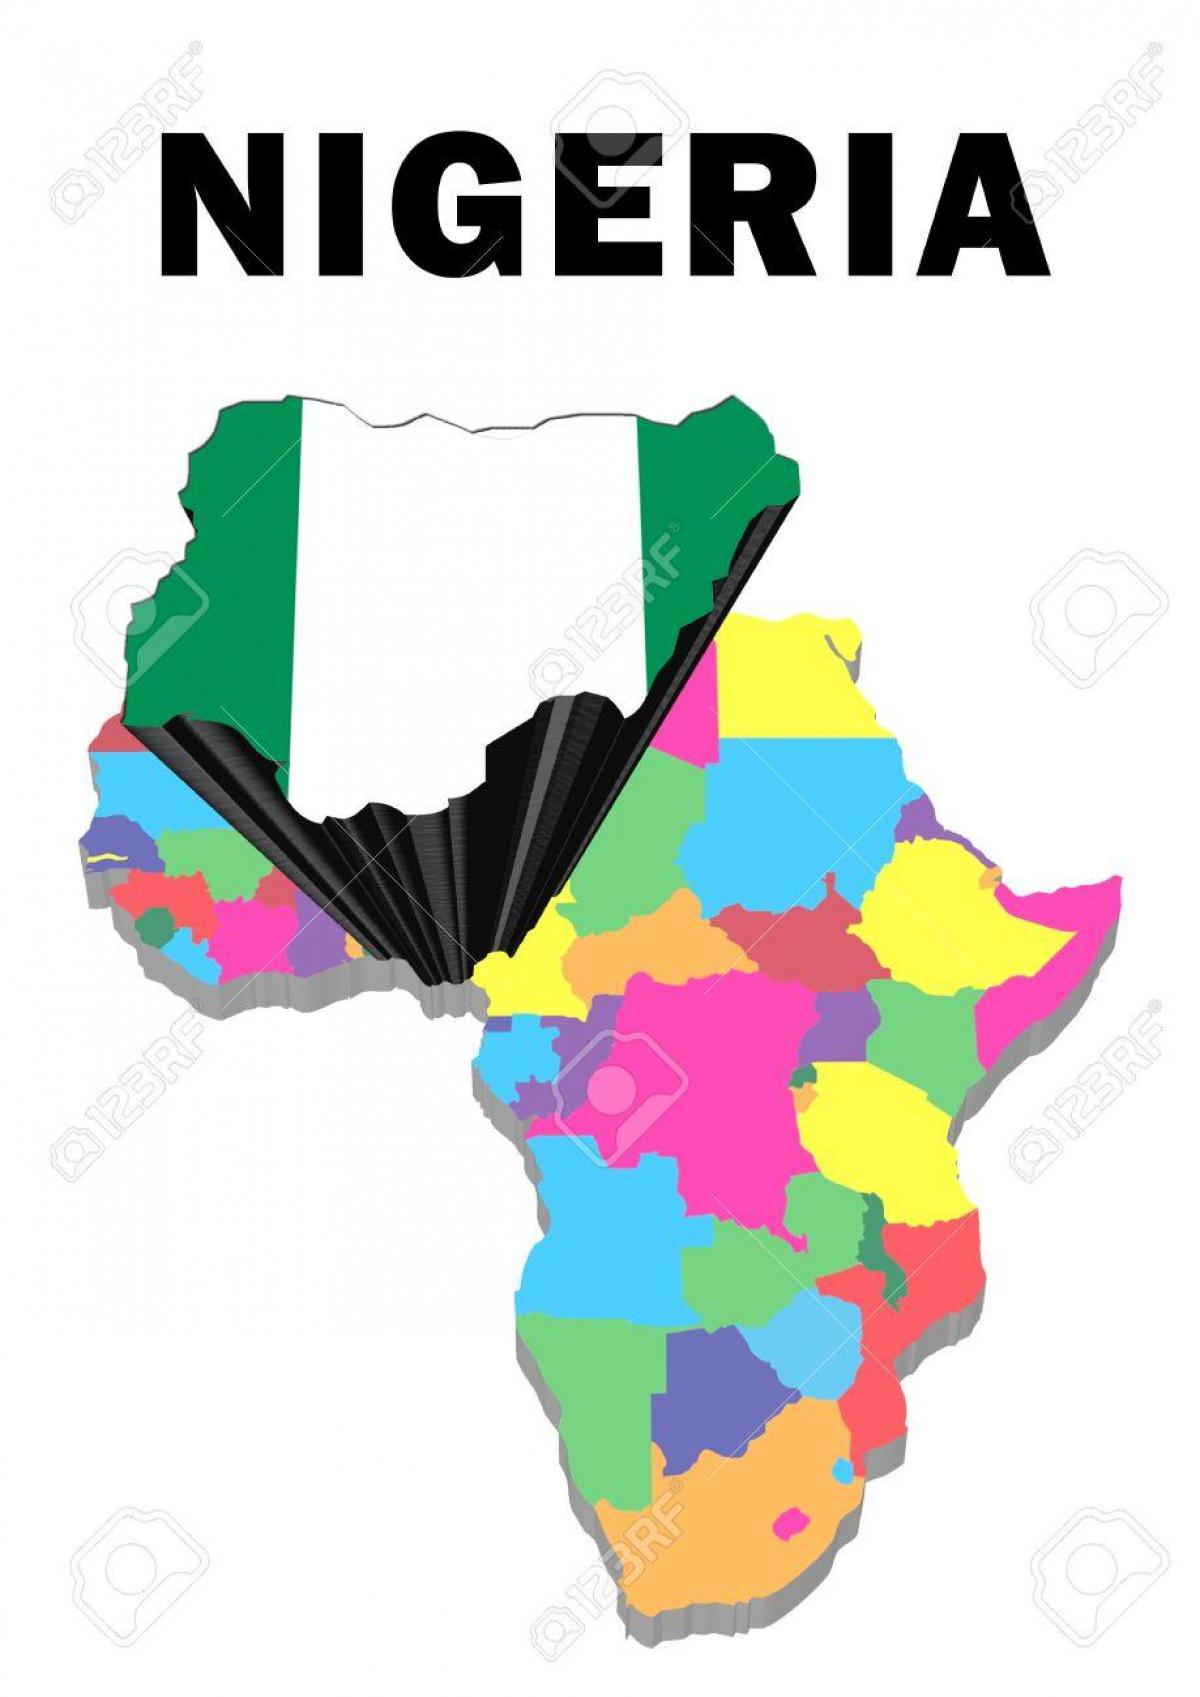 نقشہ افریقہ کے ساتھ نائیجیریا روشنی ڈالی